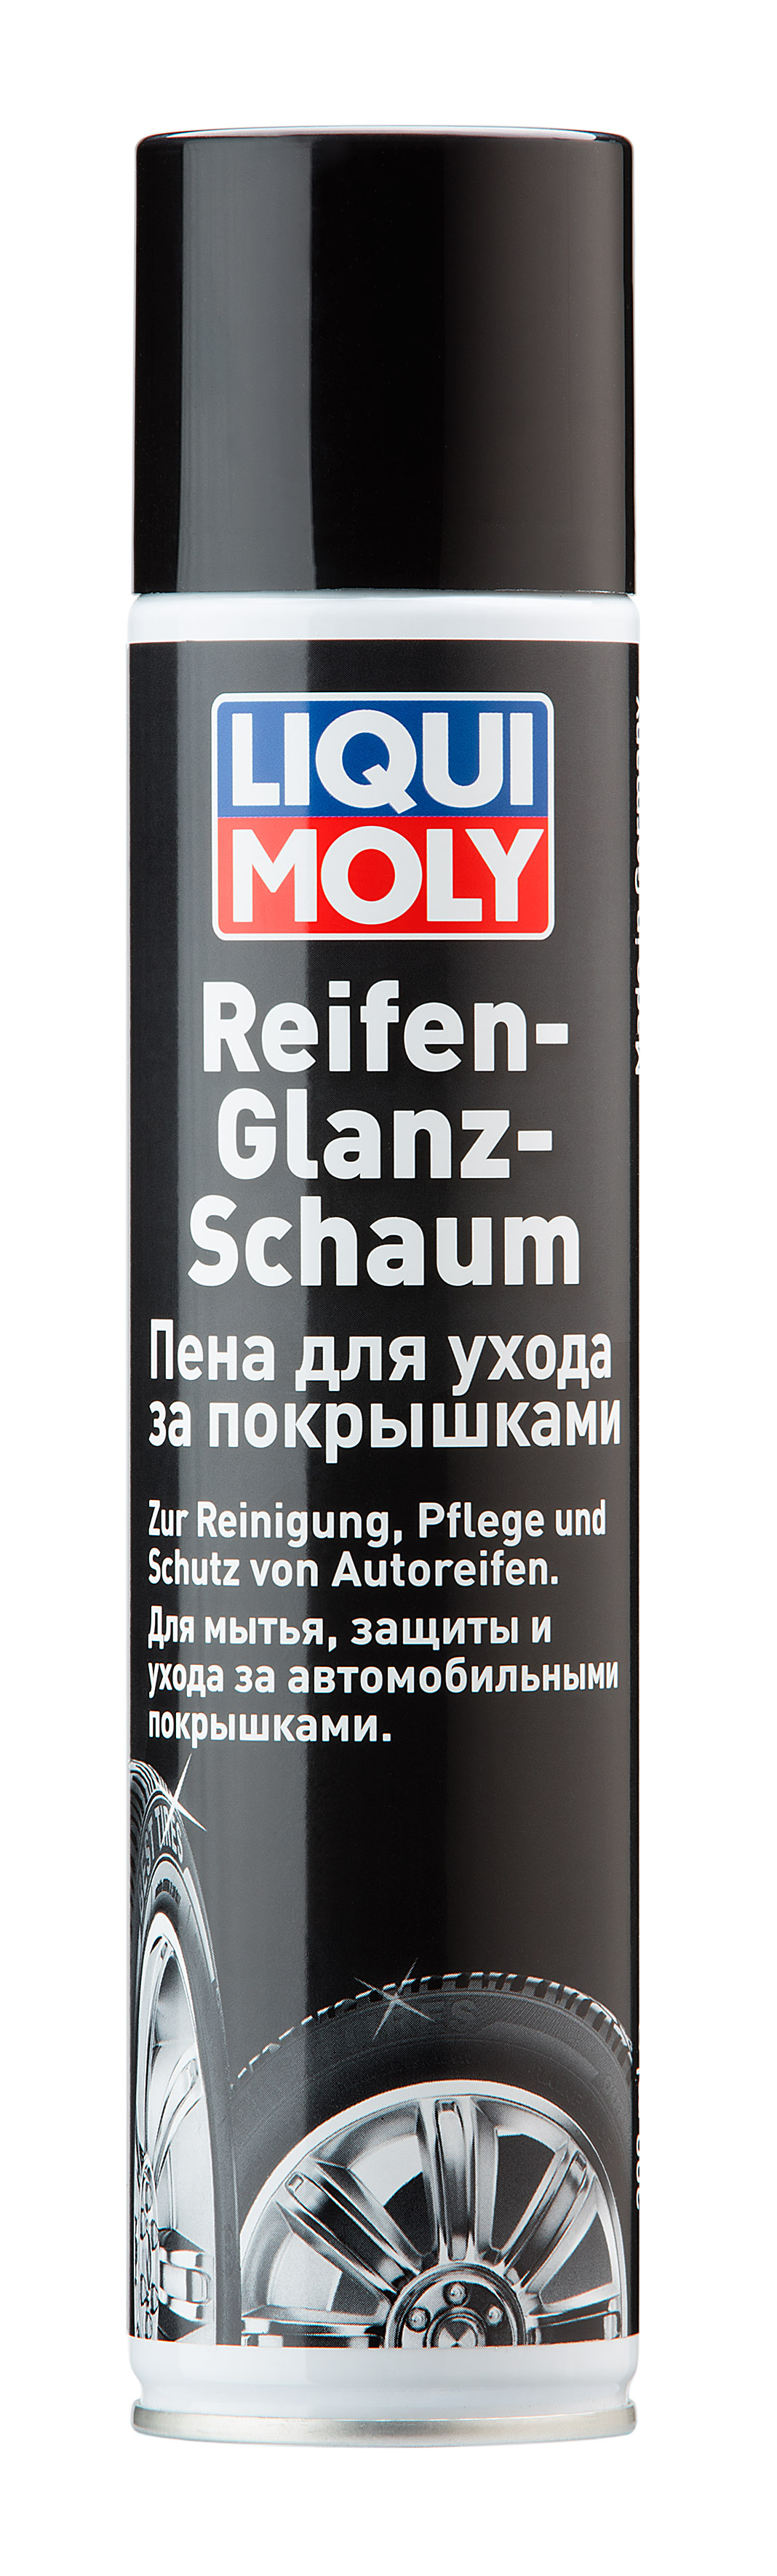 Пена для ухода за покрышками Reifen-Glanz-Schaum, 300мл - Liqui Moly 7601